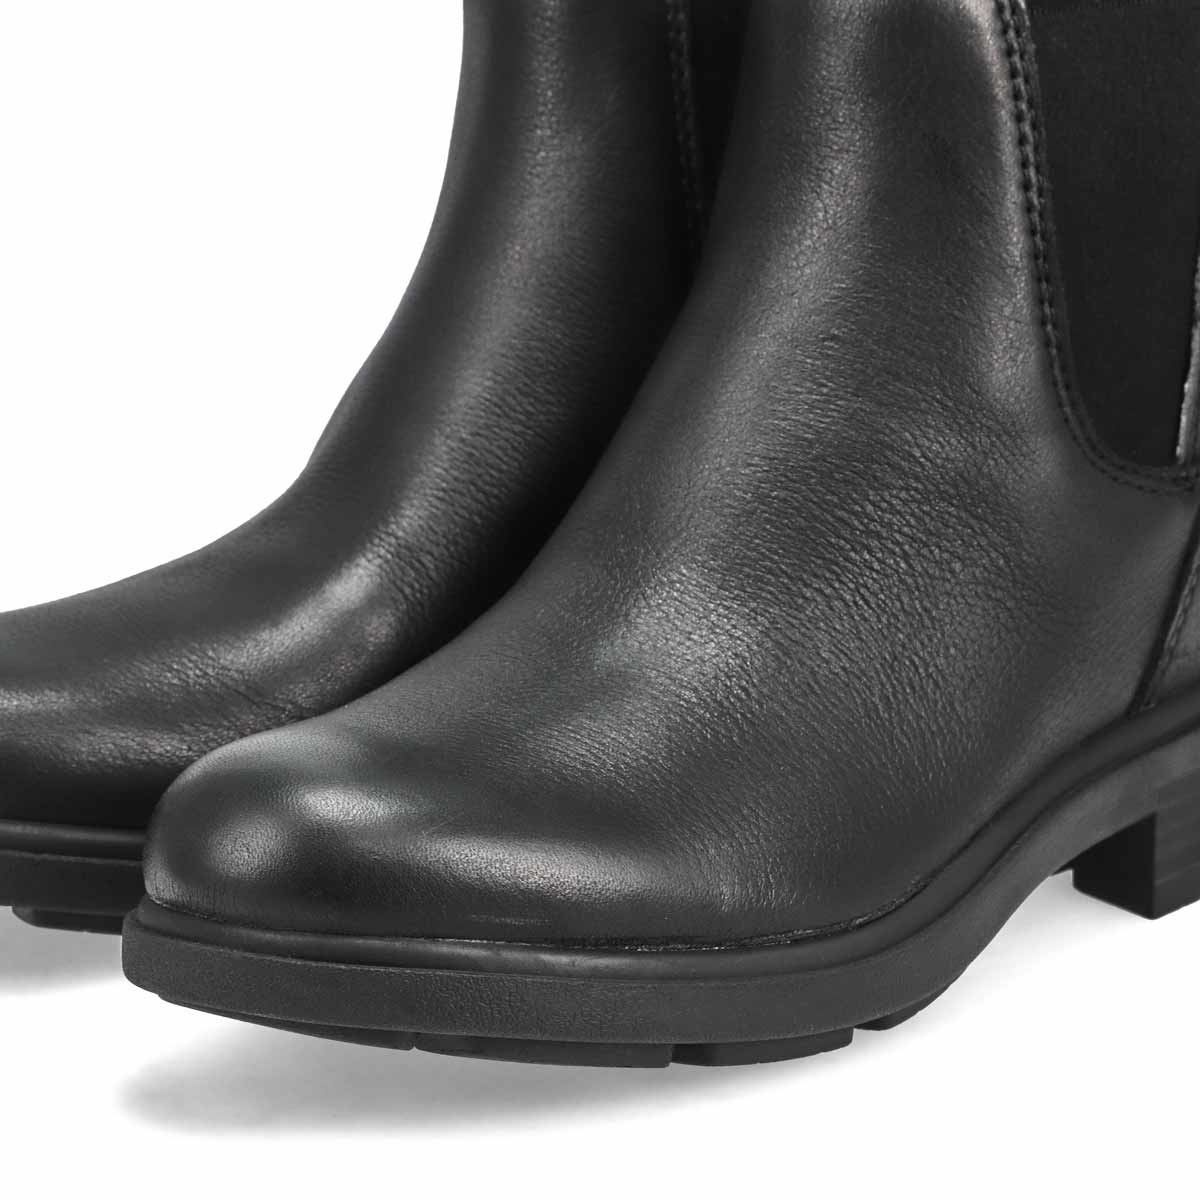 Women's Harrison Chelsea Waterproof Boot - Black